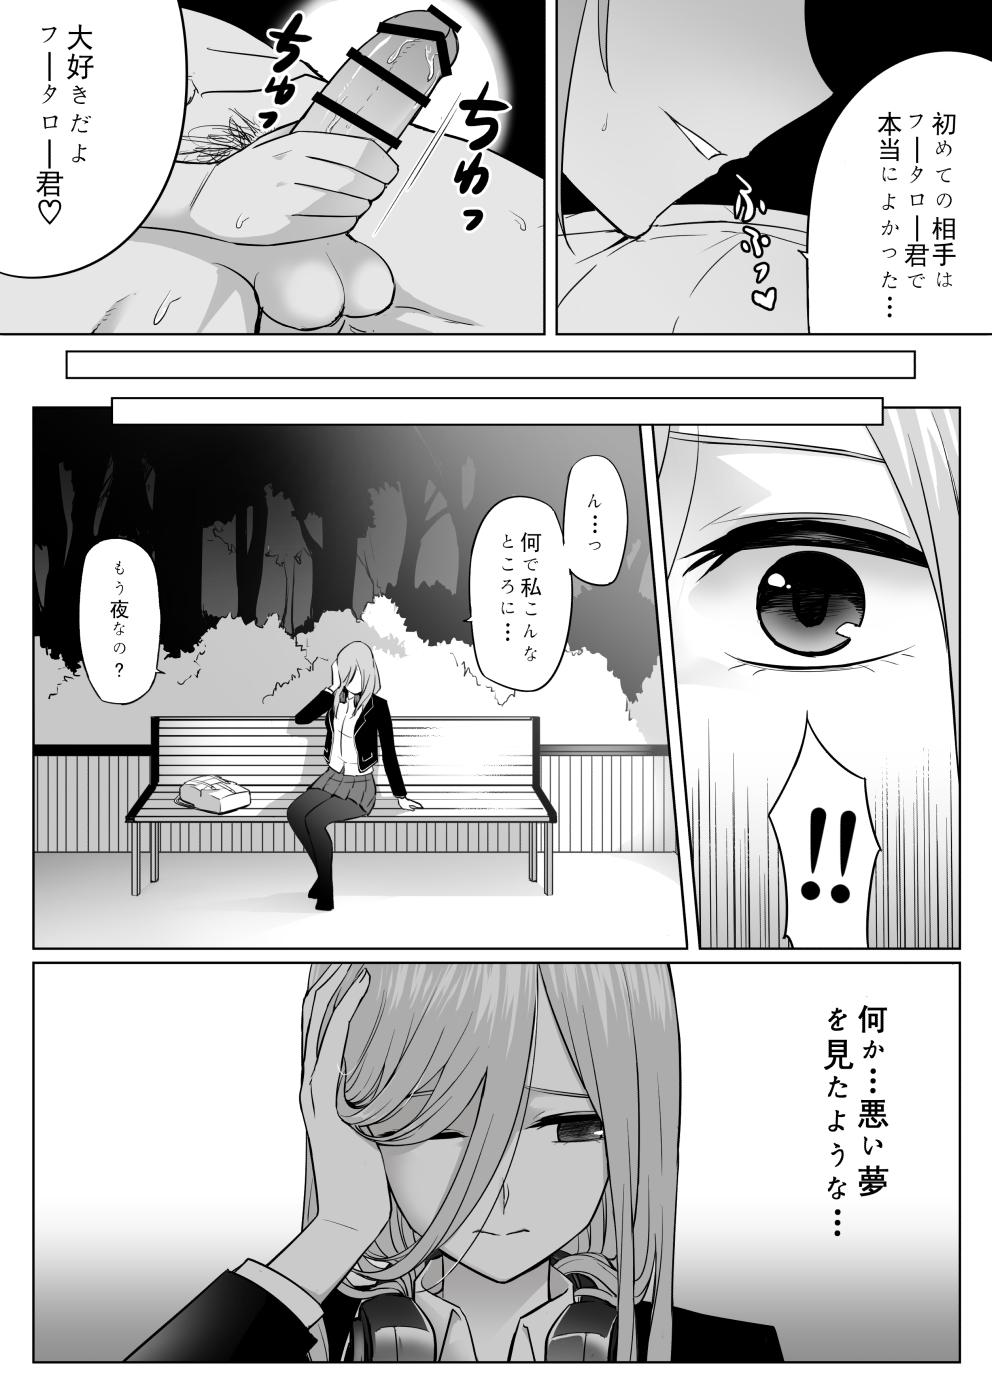 Hard Nakano ke bijin shimai shojo soushitsu - Gotoubun no hanayome Stepfather - Page 30